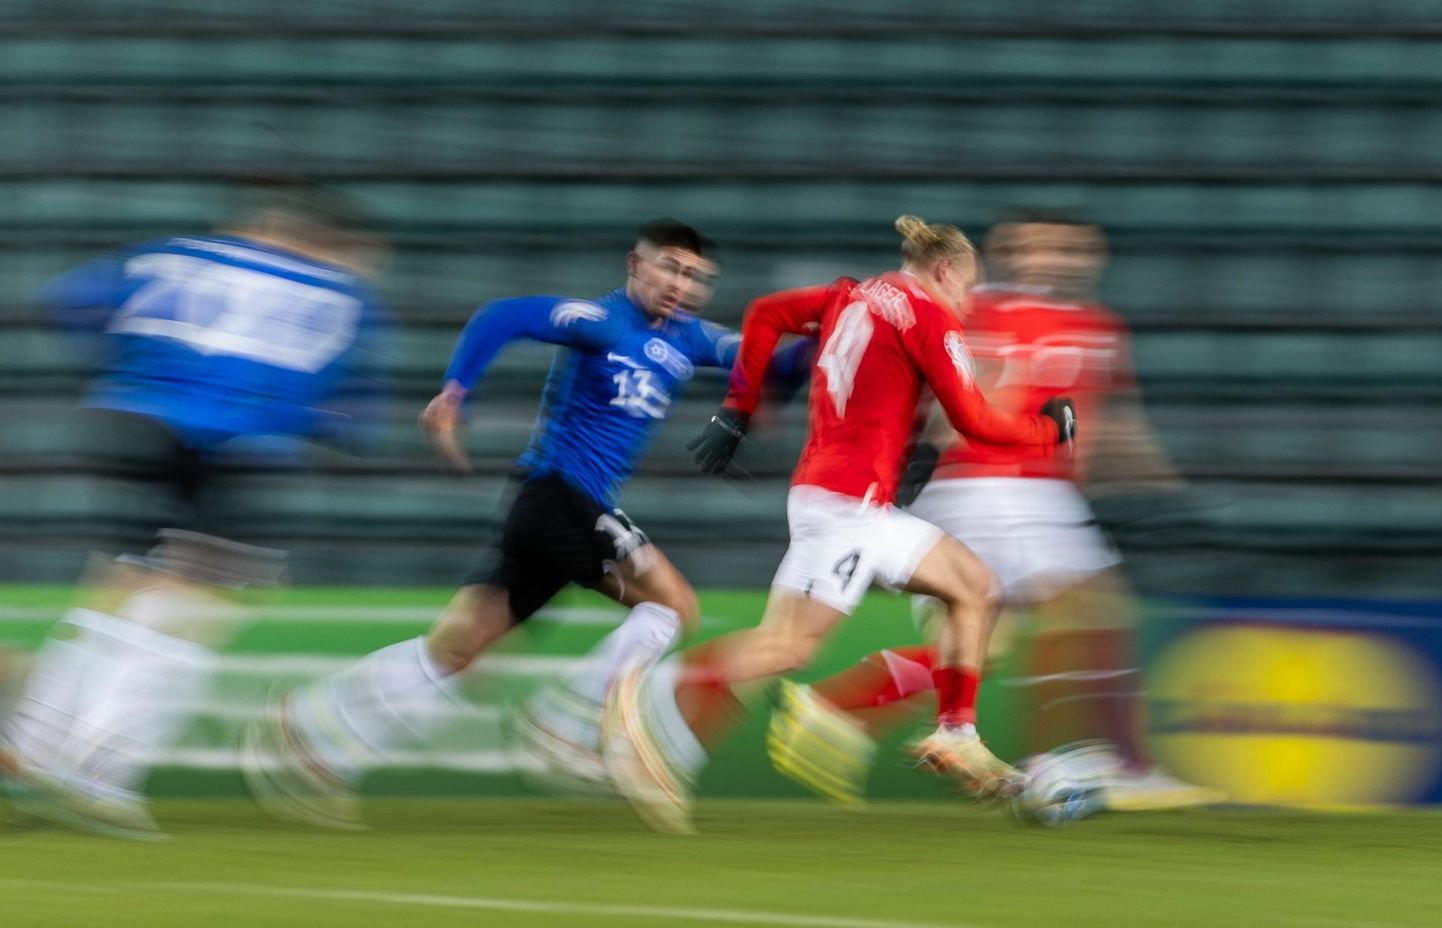 Eesti sportlastel jääb sageli üle ainult teiste tagaajamine. Pilt on novembris peetud jalgpalli EM-valikmängust Eesti – Austria, mille Eesti kaotas 0:2.